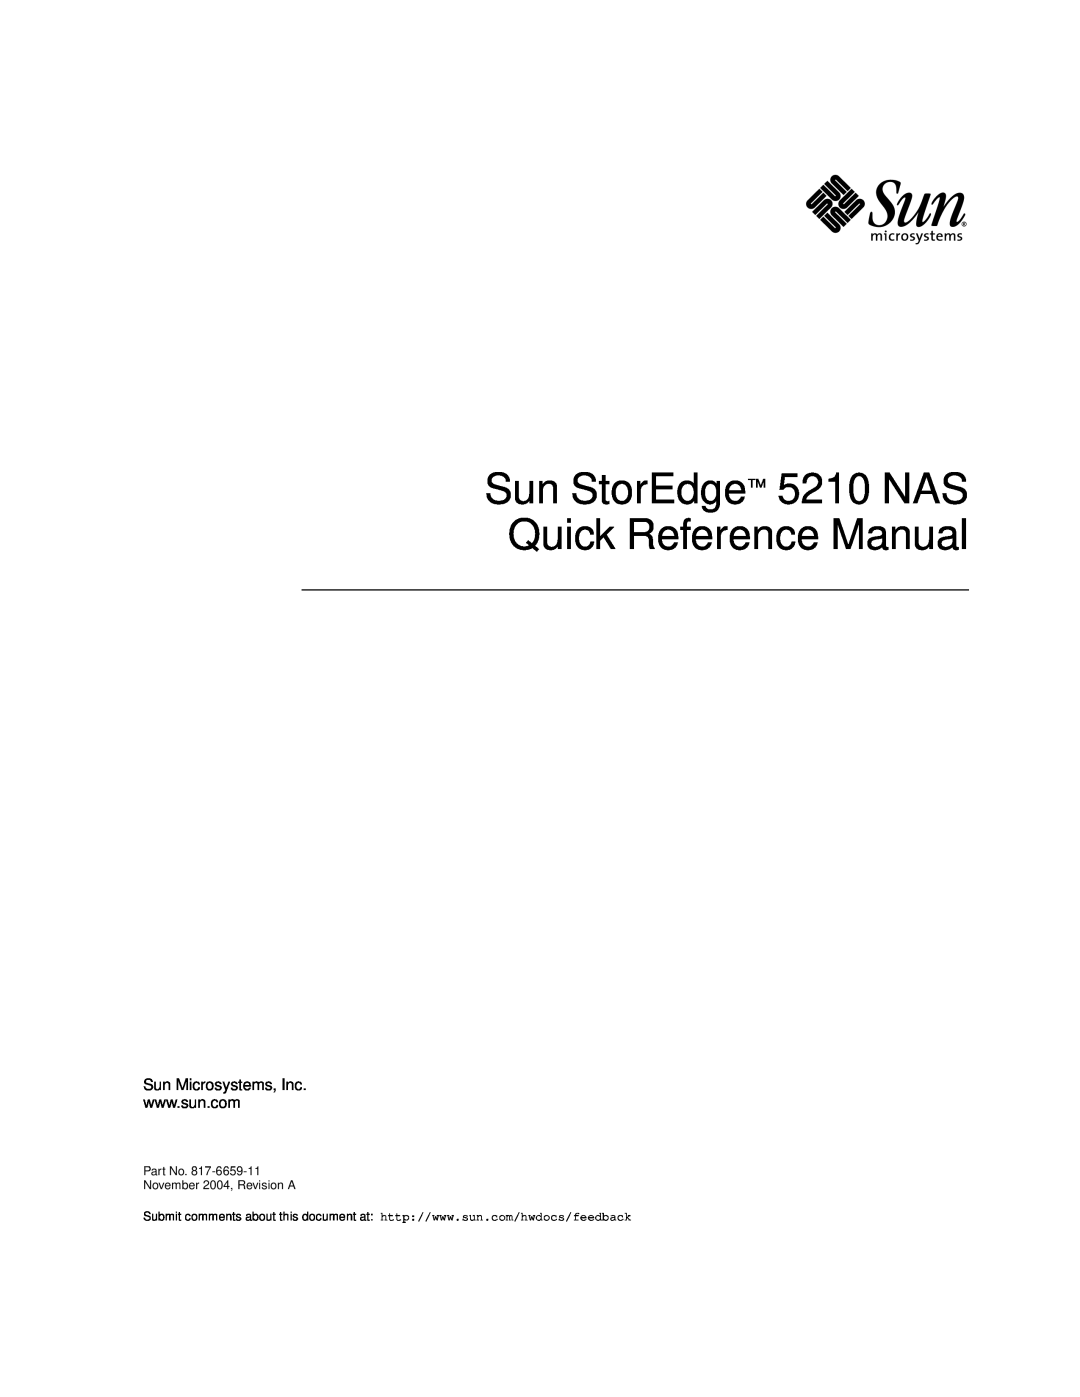 Sun Microsystems manual Sun StorEdge 5210 NAS Quick Reference Manual, Sun Microsystems, Inc, November 2004, Revision A 